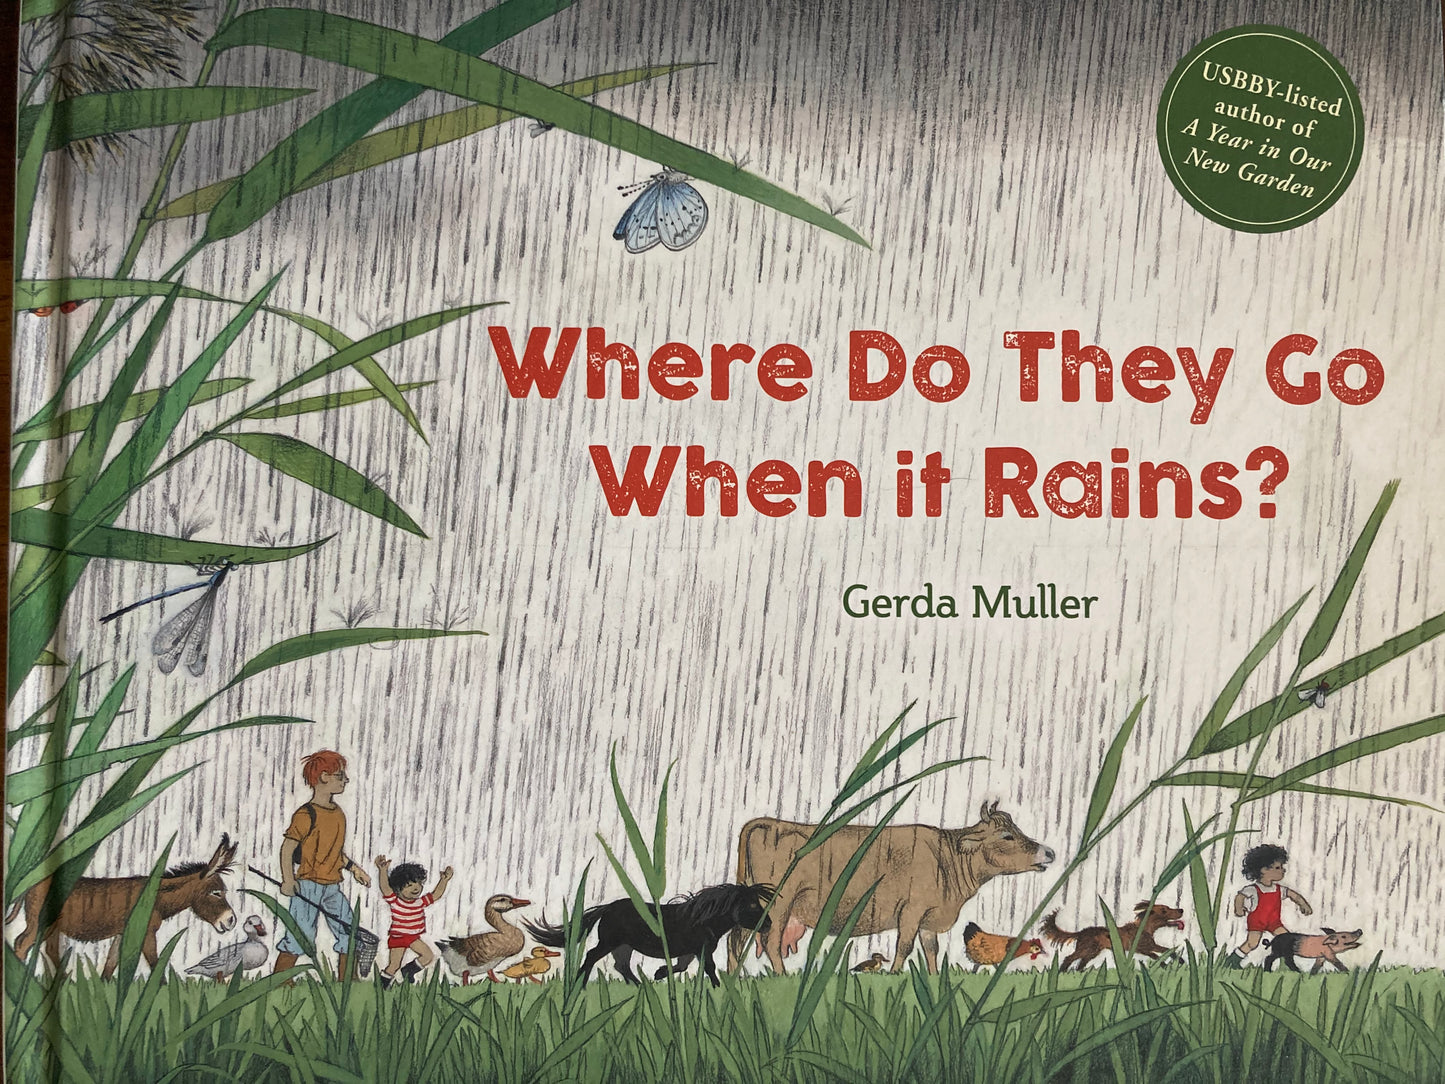 Children's Picture Book - WHERE DO THEY GO WHEN IT RAINS?